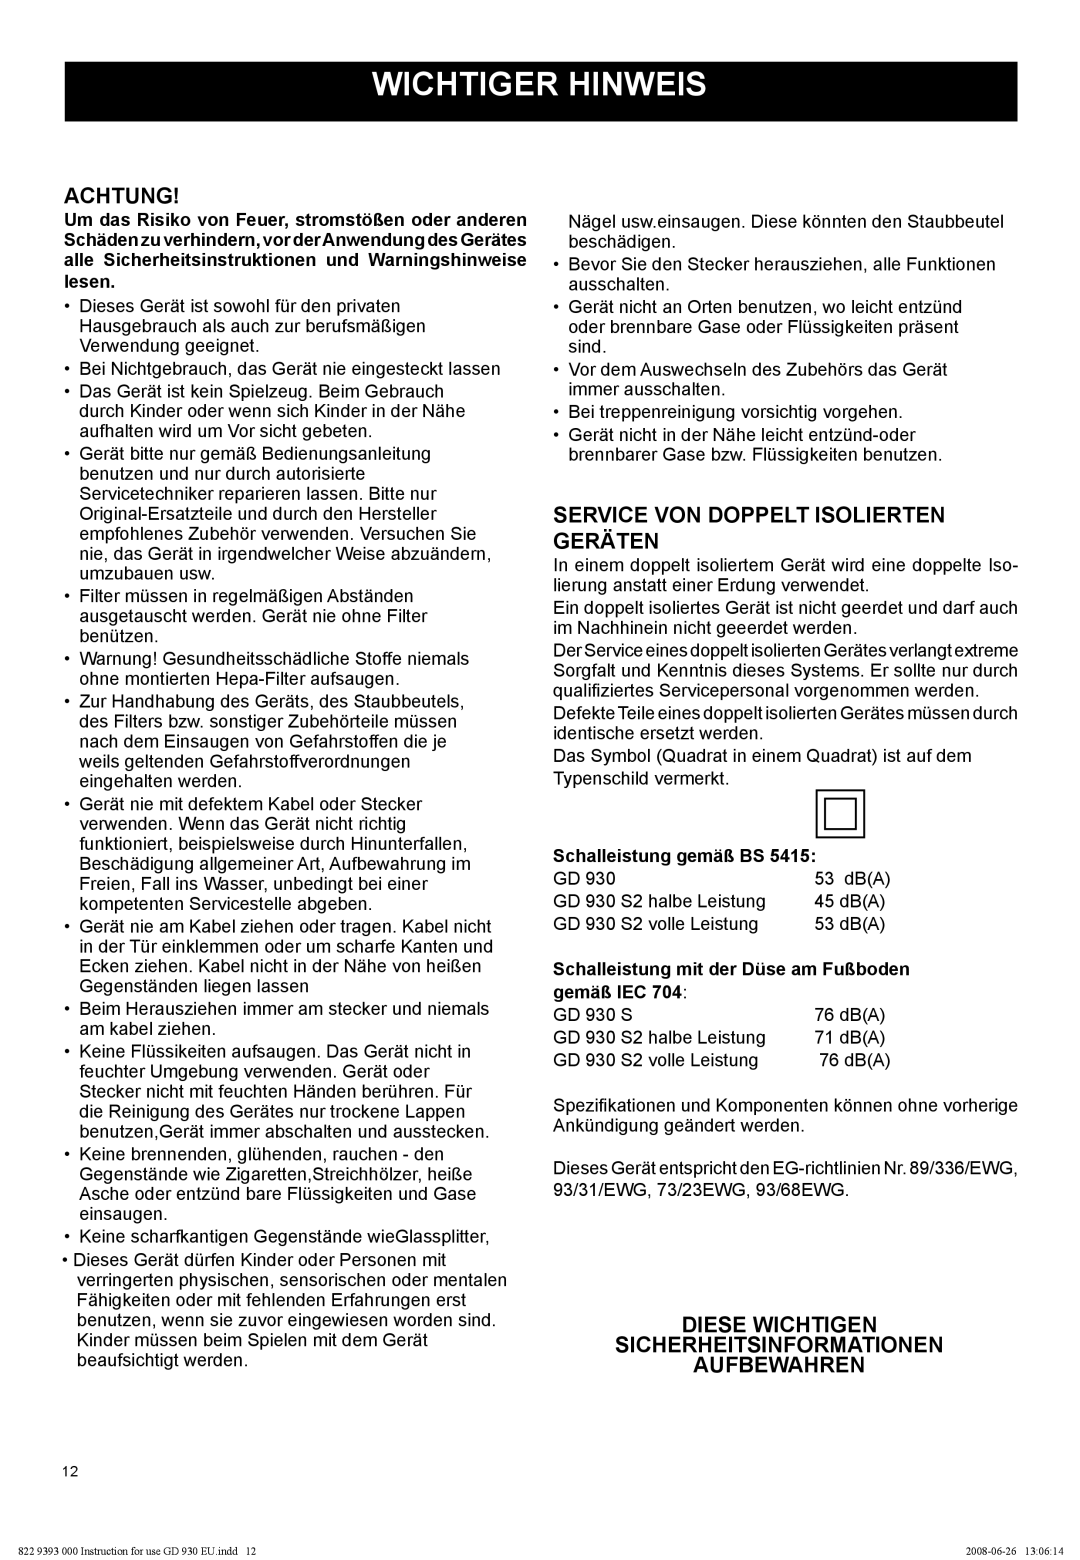 Nilfisk-Advance America GD 930S2 manual Wichtiger Hinweis, Achtung, Service Von Doppelt Isolierten Geräten, Aufbewahren 